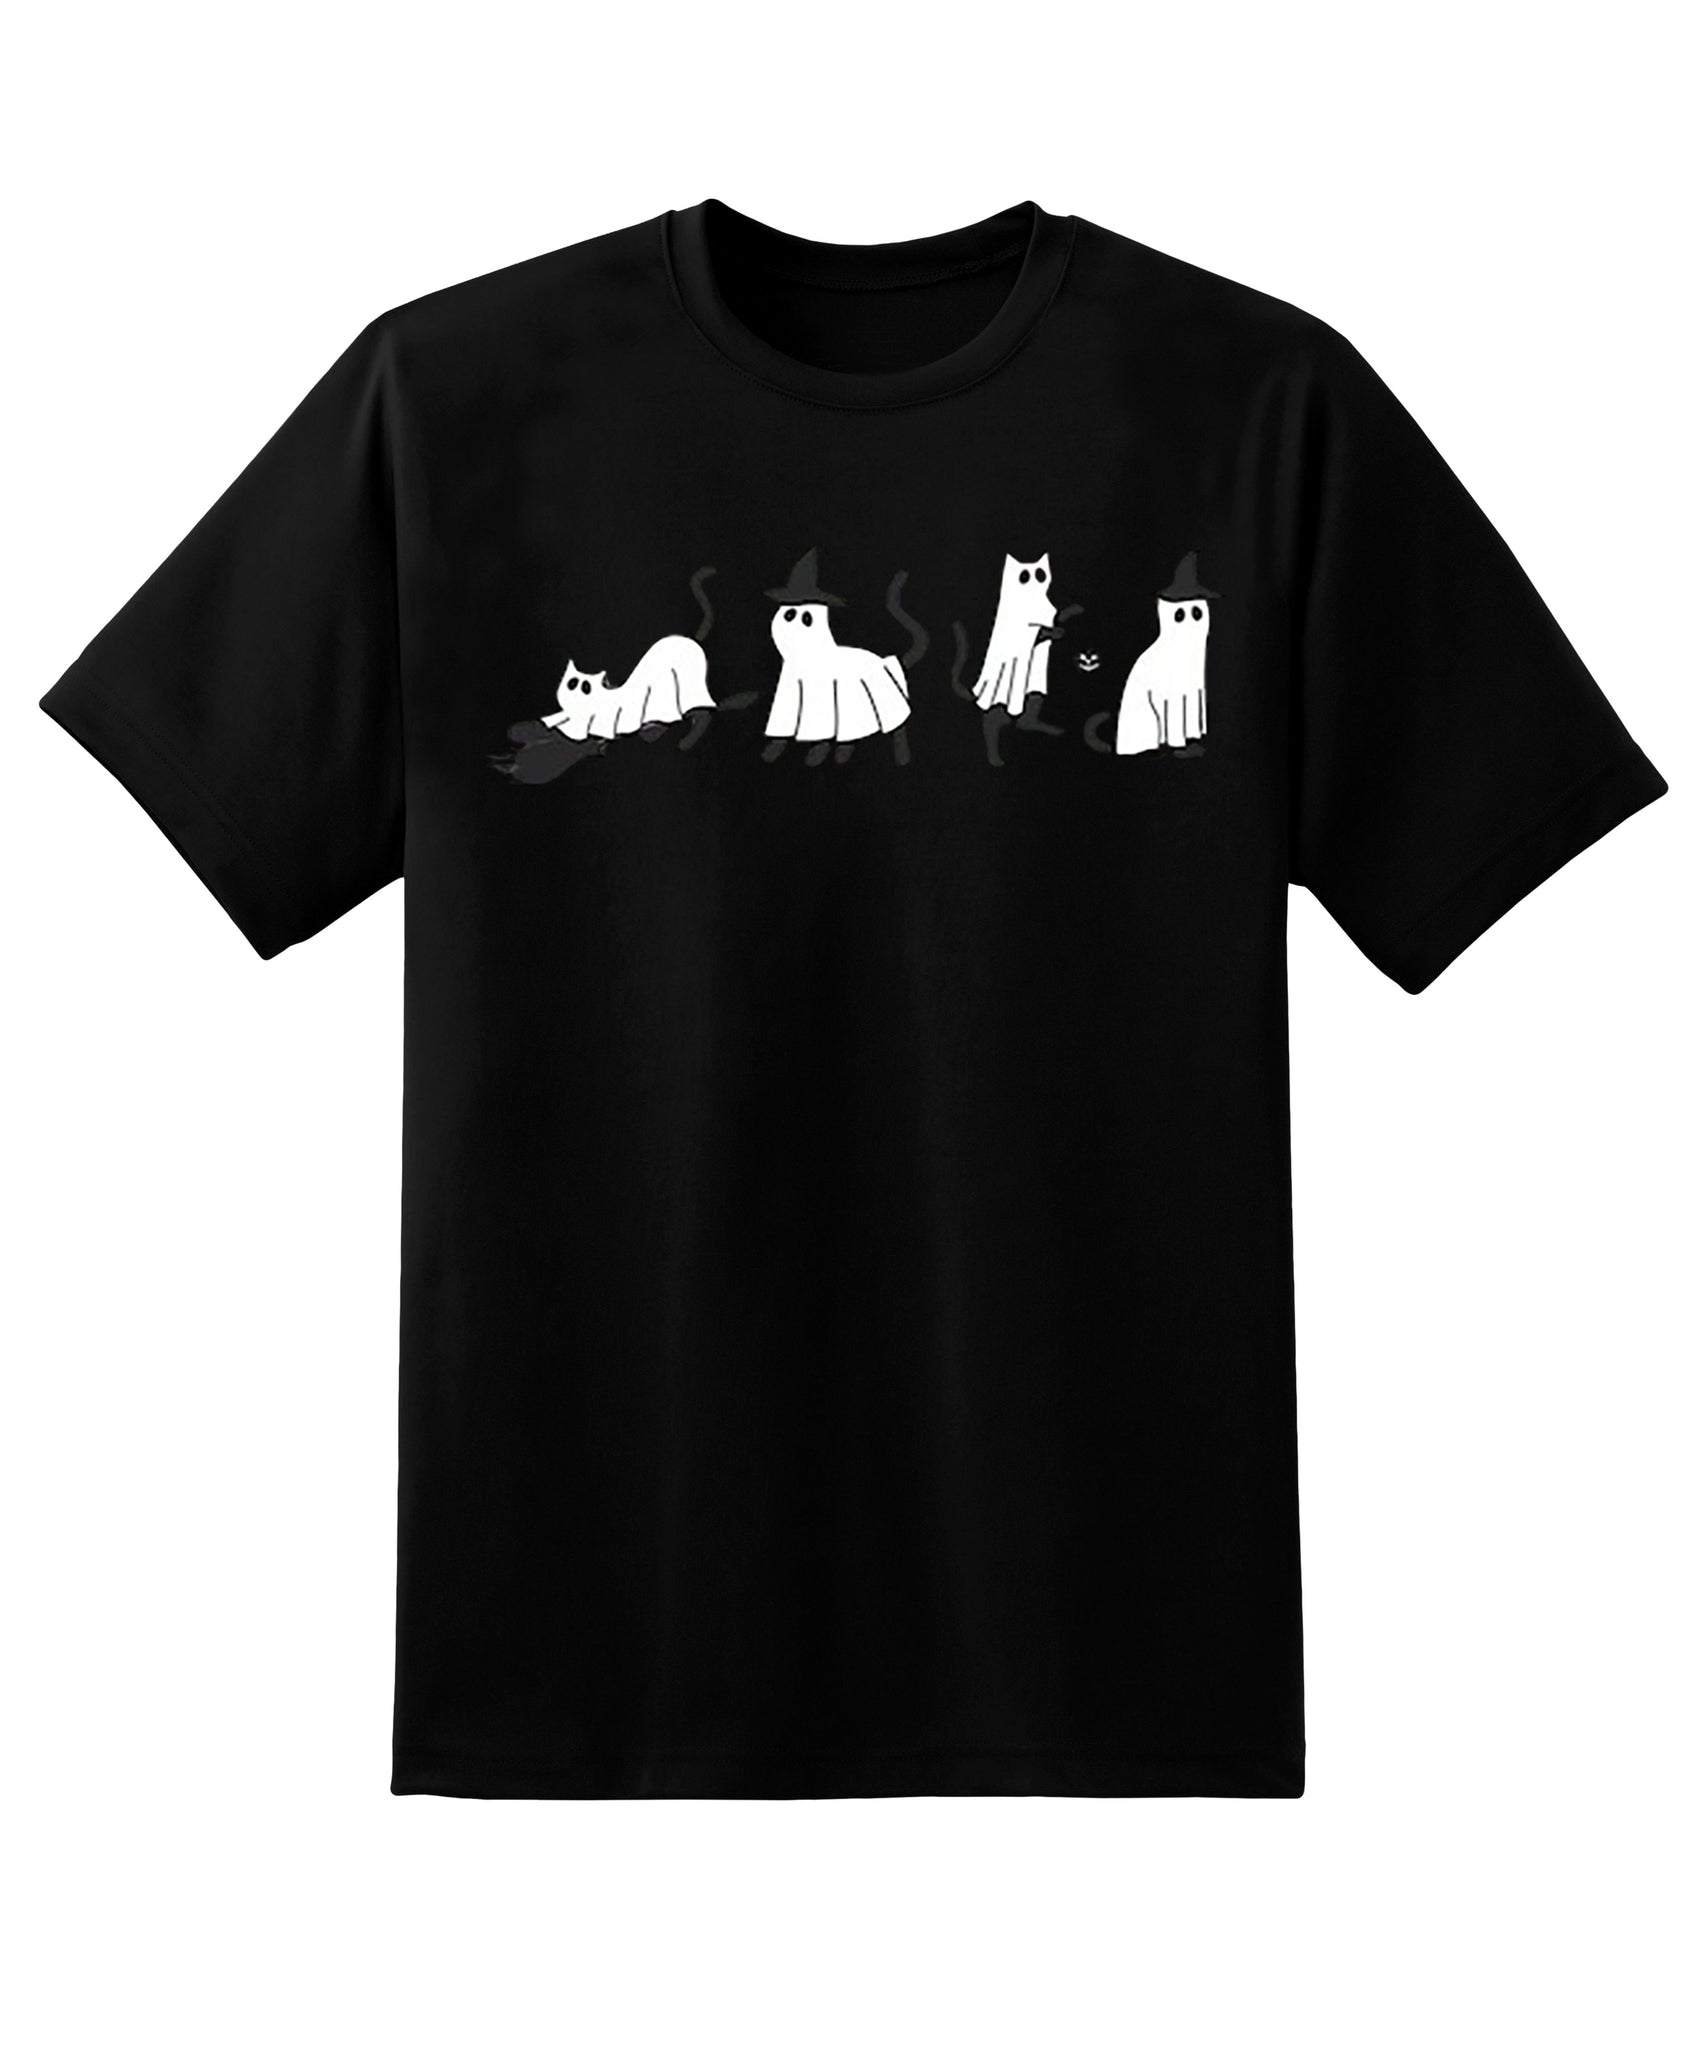 Skitongift Cat T-Shirt,Cat Lover Shirt,Black Cat Shirt,Spooky Season,Halloween Cat Sweat,Halloween Cat Shirt